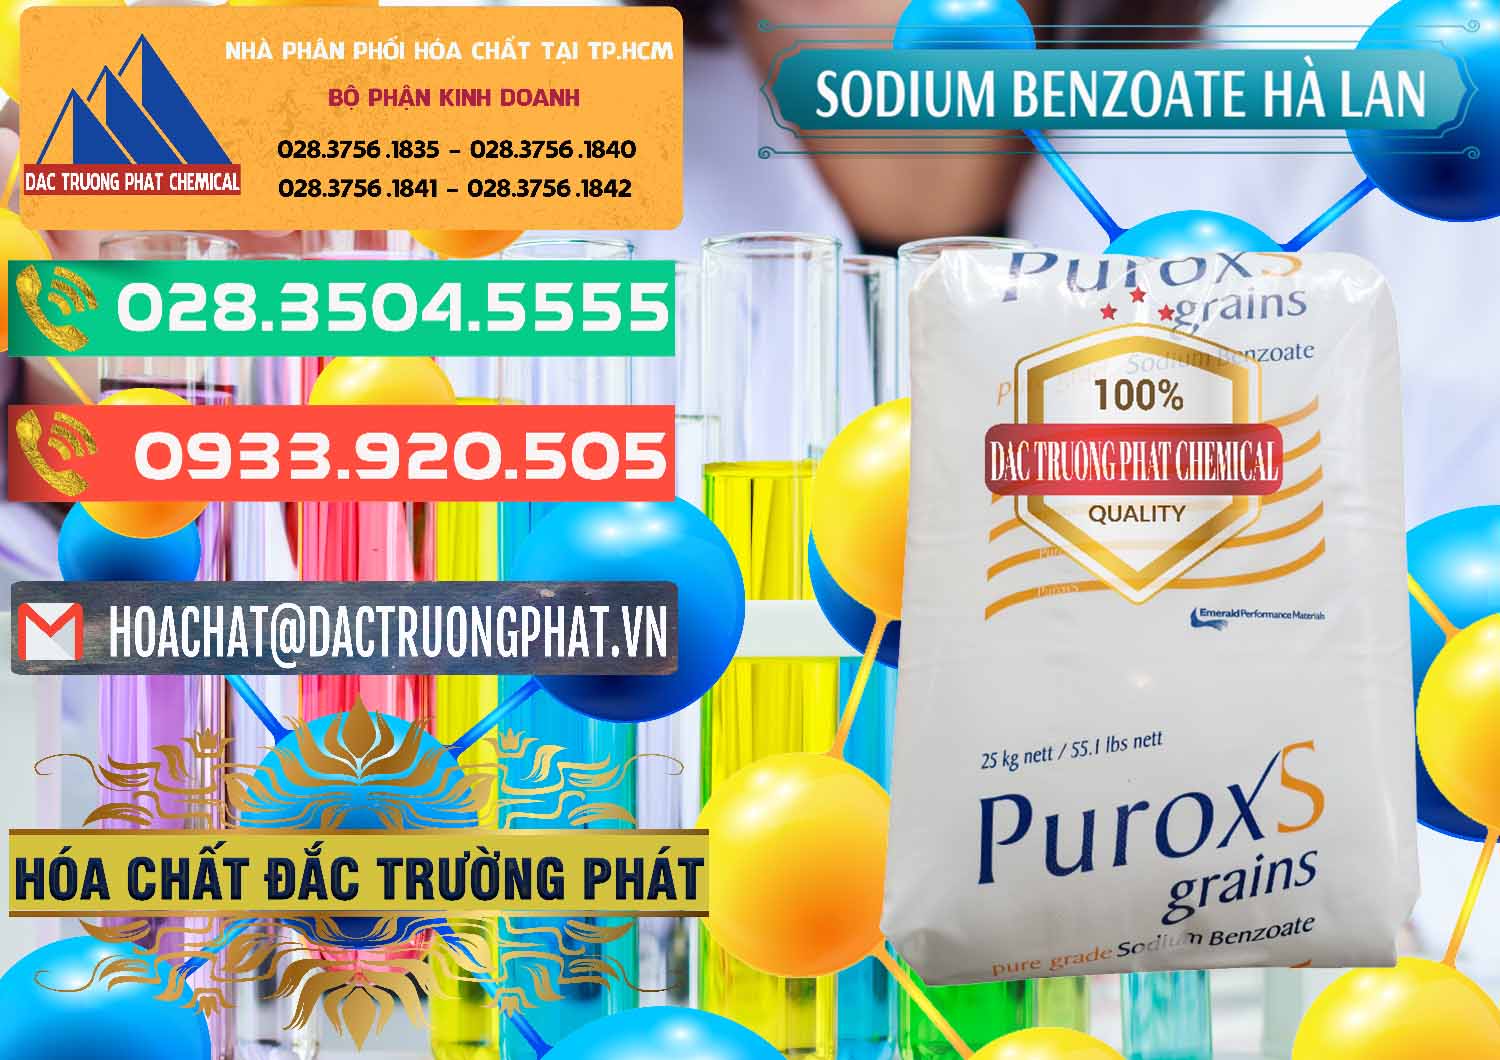 Đơn vị kinh doanh ( bán ) Sodium Benzoate - Mốc Bột Puroxs Hà Lan Netherlands - 0467 - Nơi phân phối & cung cấp hóa chất tại TP.HCM - congtyhoachat.com.vn